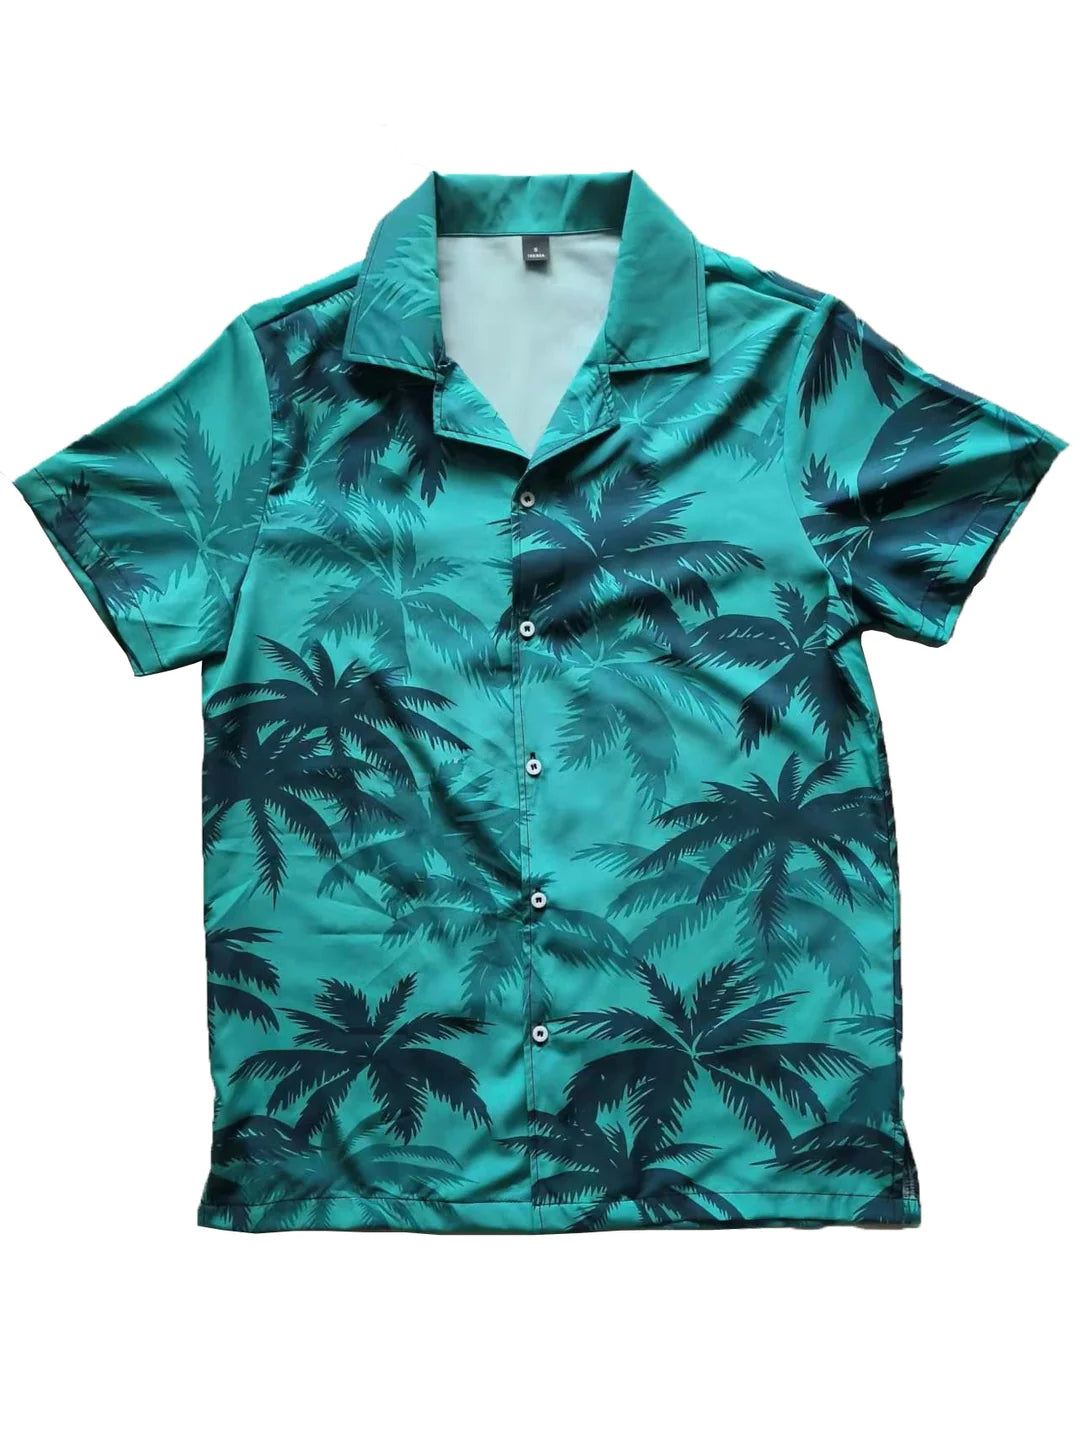 Vice City Hawaiian Shirt - Lanorys®